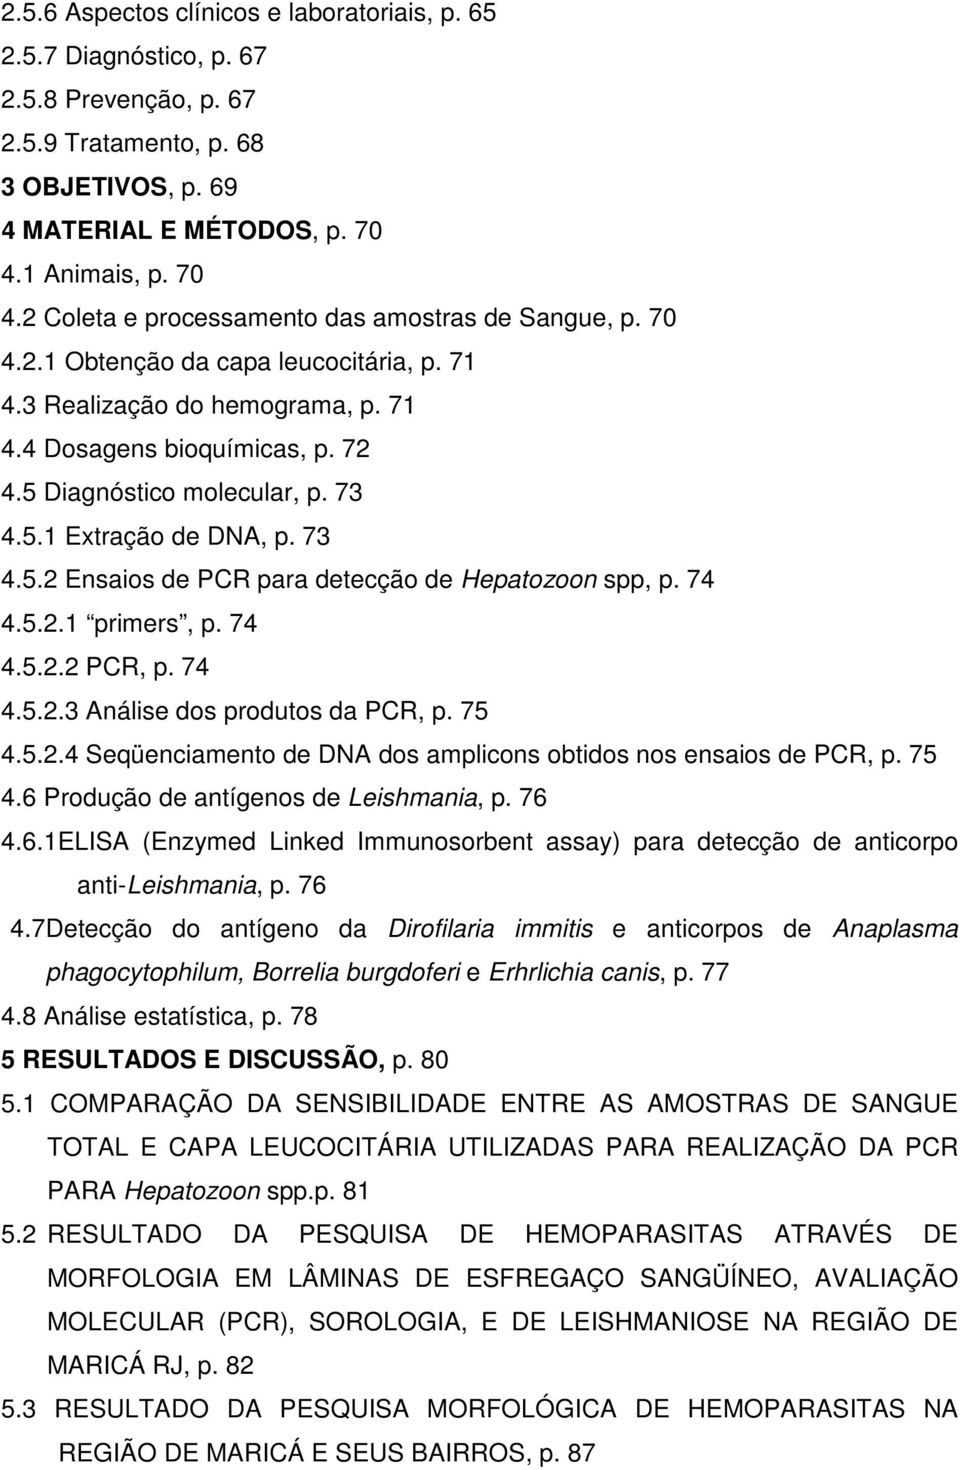 5 Diagnóstico molecular, p. 73 4.5.1 Extração de DNA, p. 73 4.5.2 Ensaios de PCR para detecção de Hepatozoon spp, p. 74 4.5.2.1 primers, p. 74 4.5.2.2 PCR, p. 74 4.5.2.3 Análise dos produtos da PCR, p.